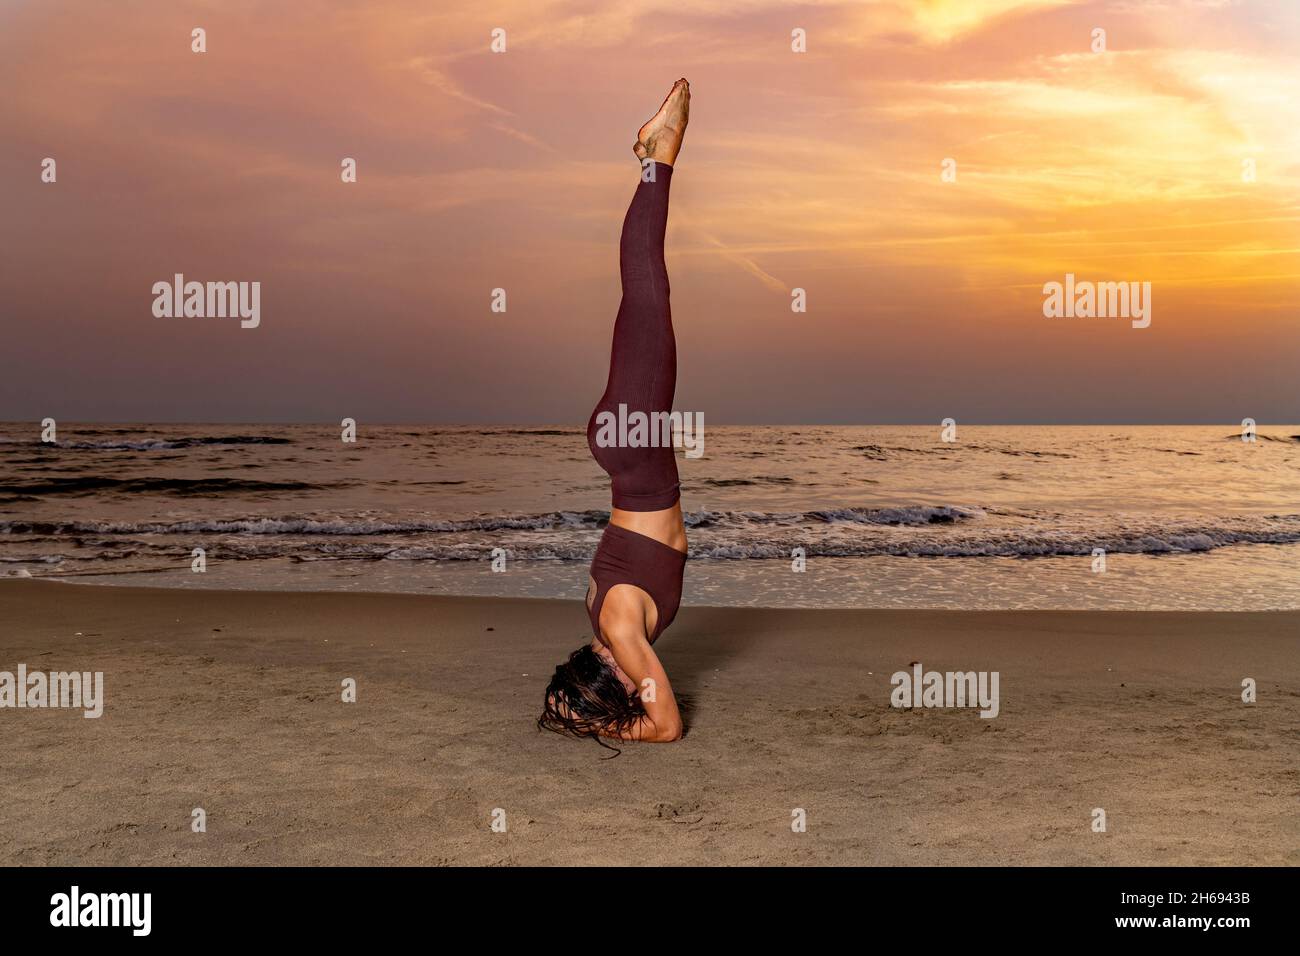 Frau praktiziert Yoga am Strand bei Sonnenuntergang. Frau in Sirsanlage auf dem Sand. Konzept von Wohlbefinden und Gelassenheit. Stockfoto